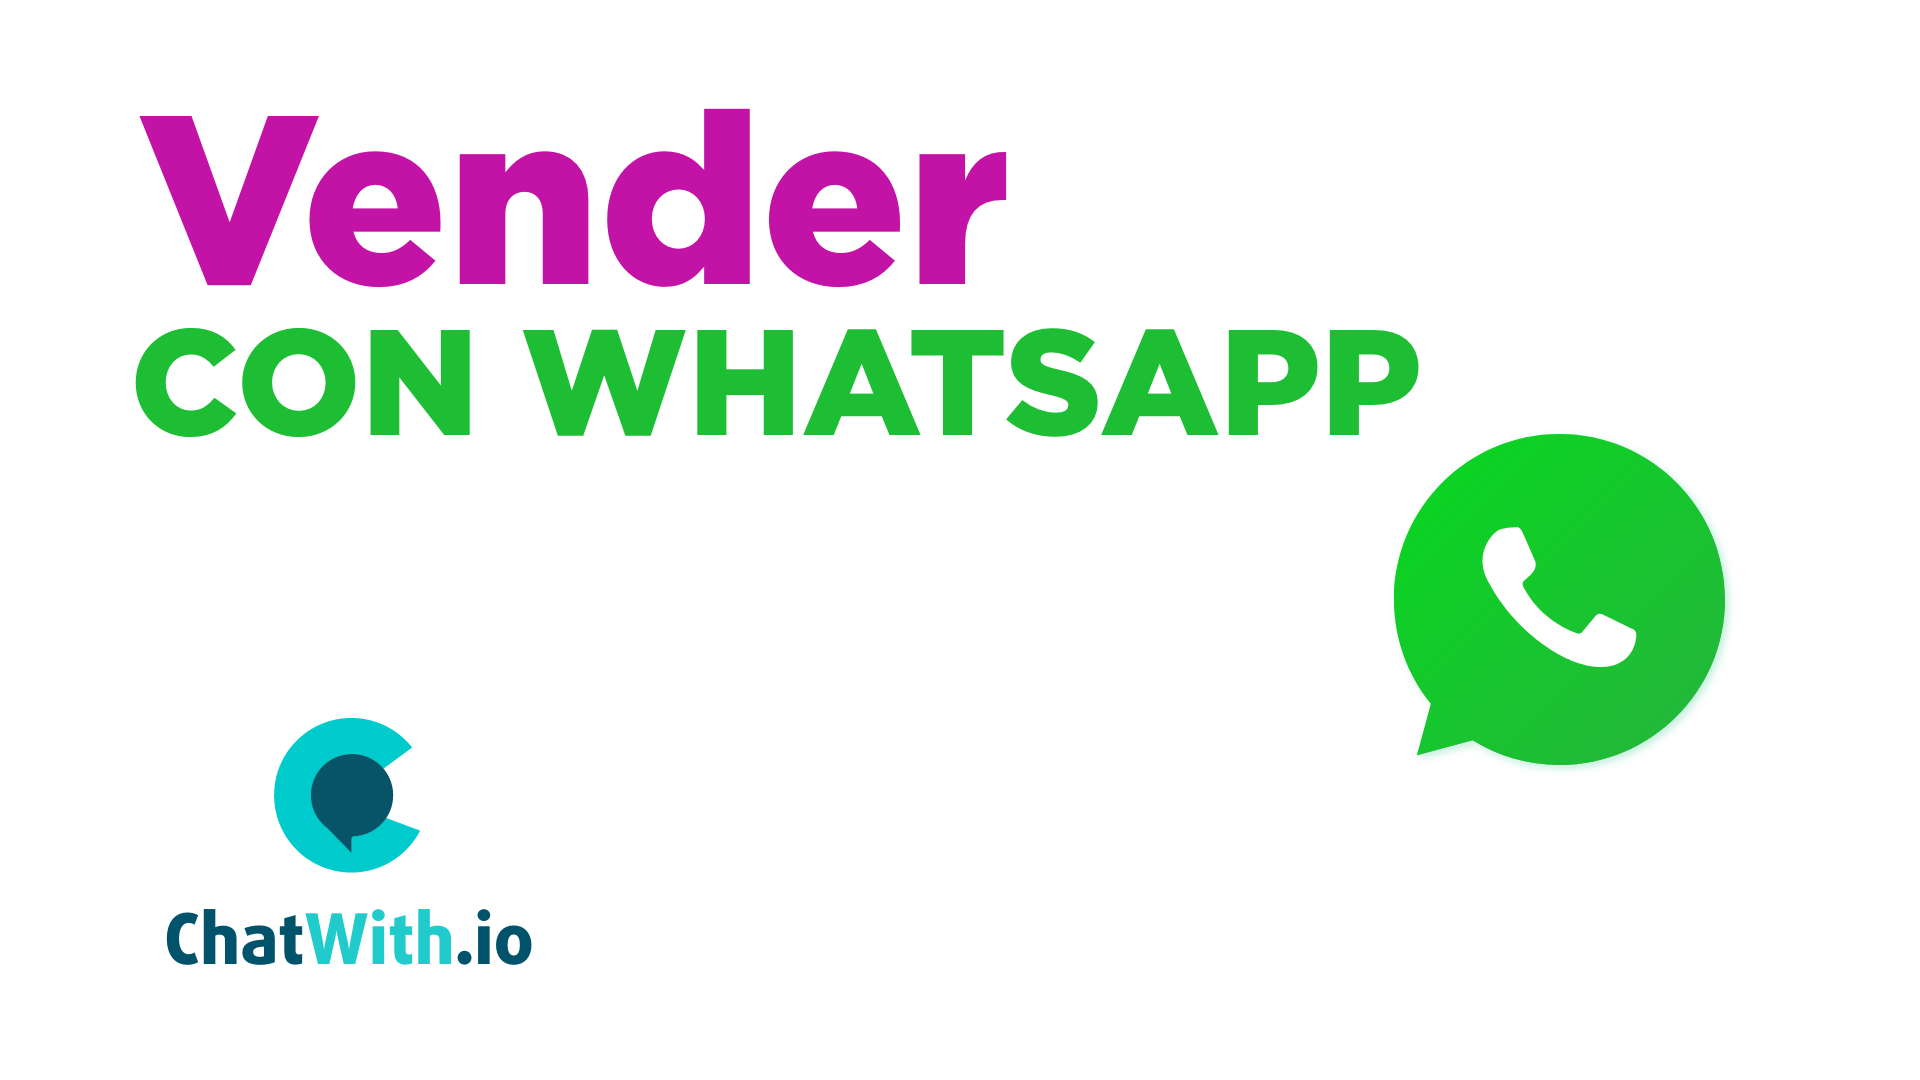 Vender con WhatsApp con ChatWith.io: 3 oportunidades de oro 